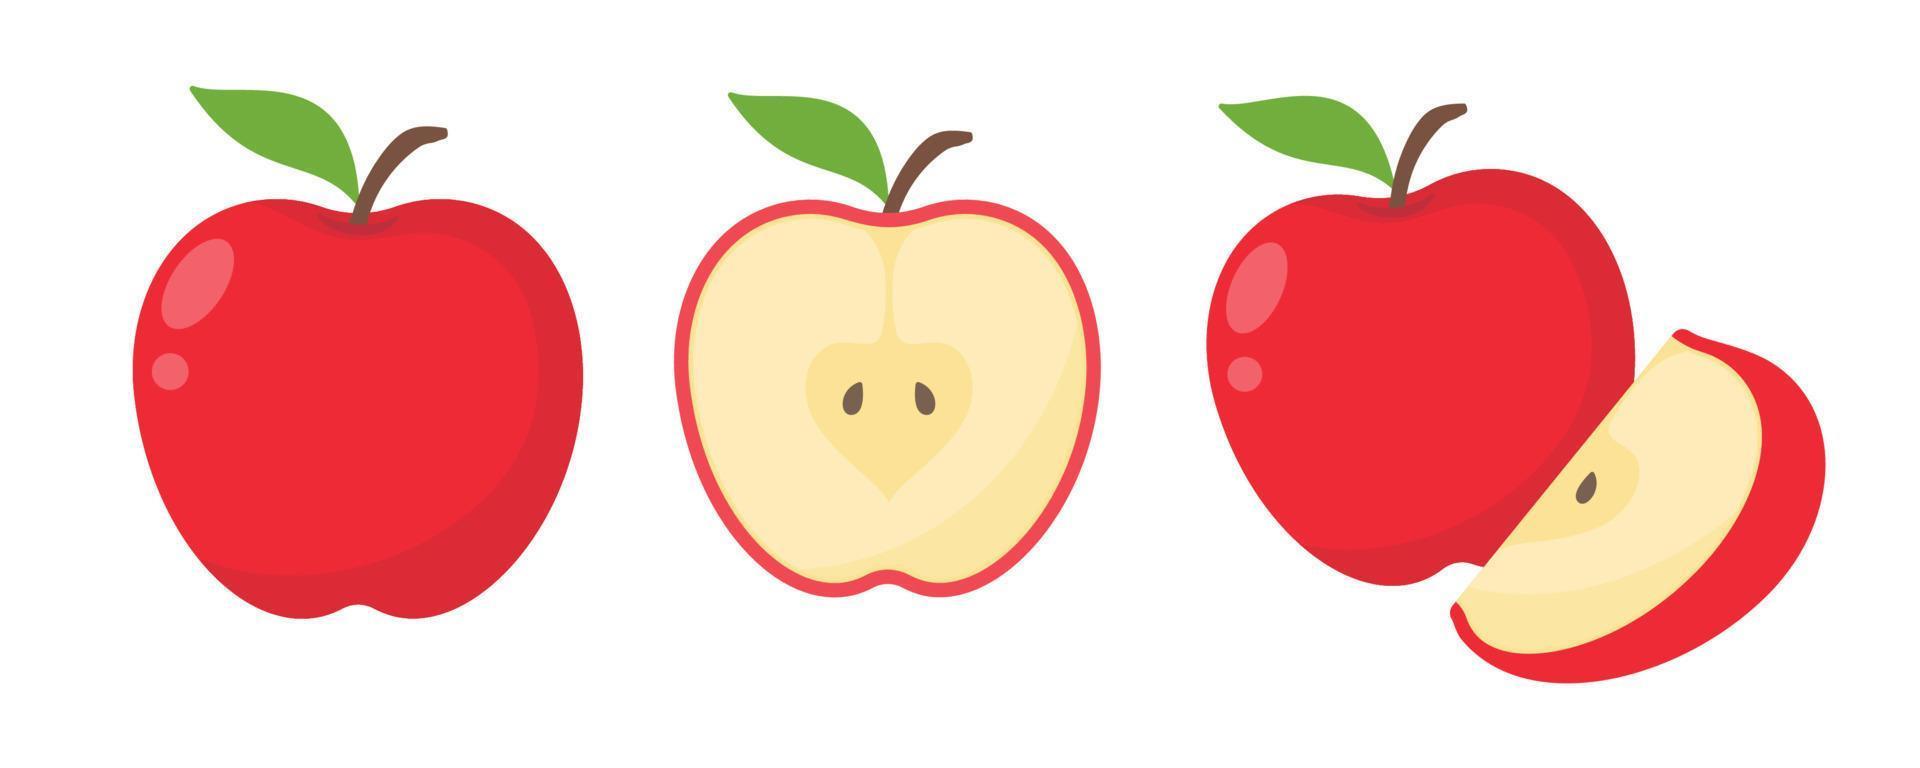 vetor de maçã vermelha. fruta doce saudável